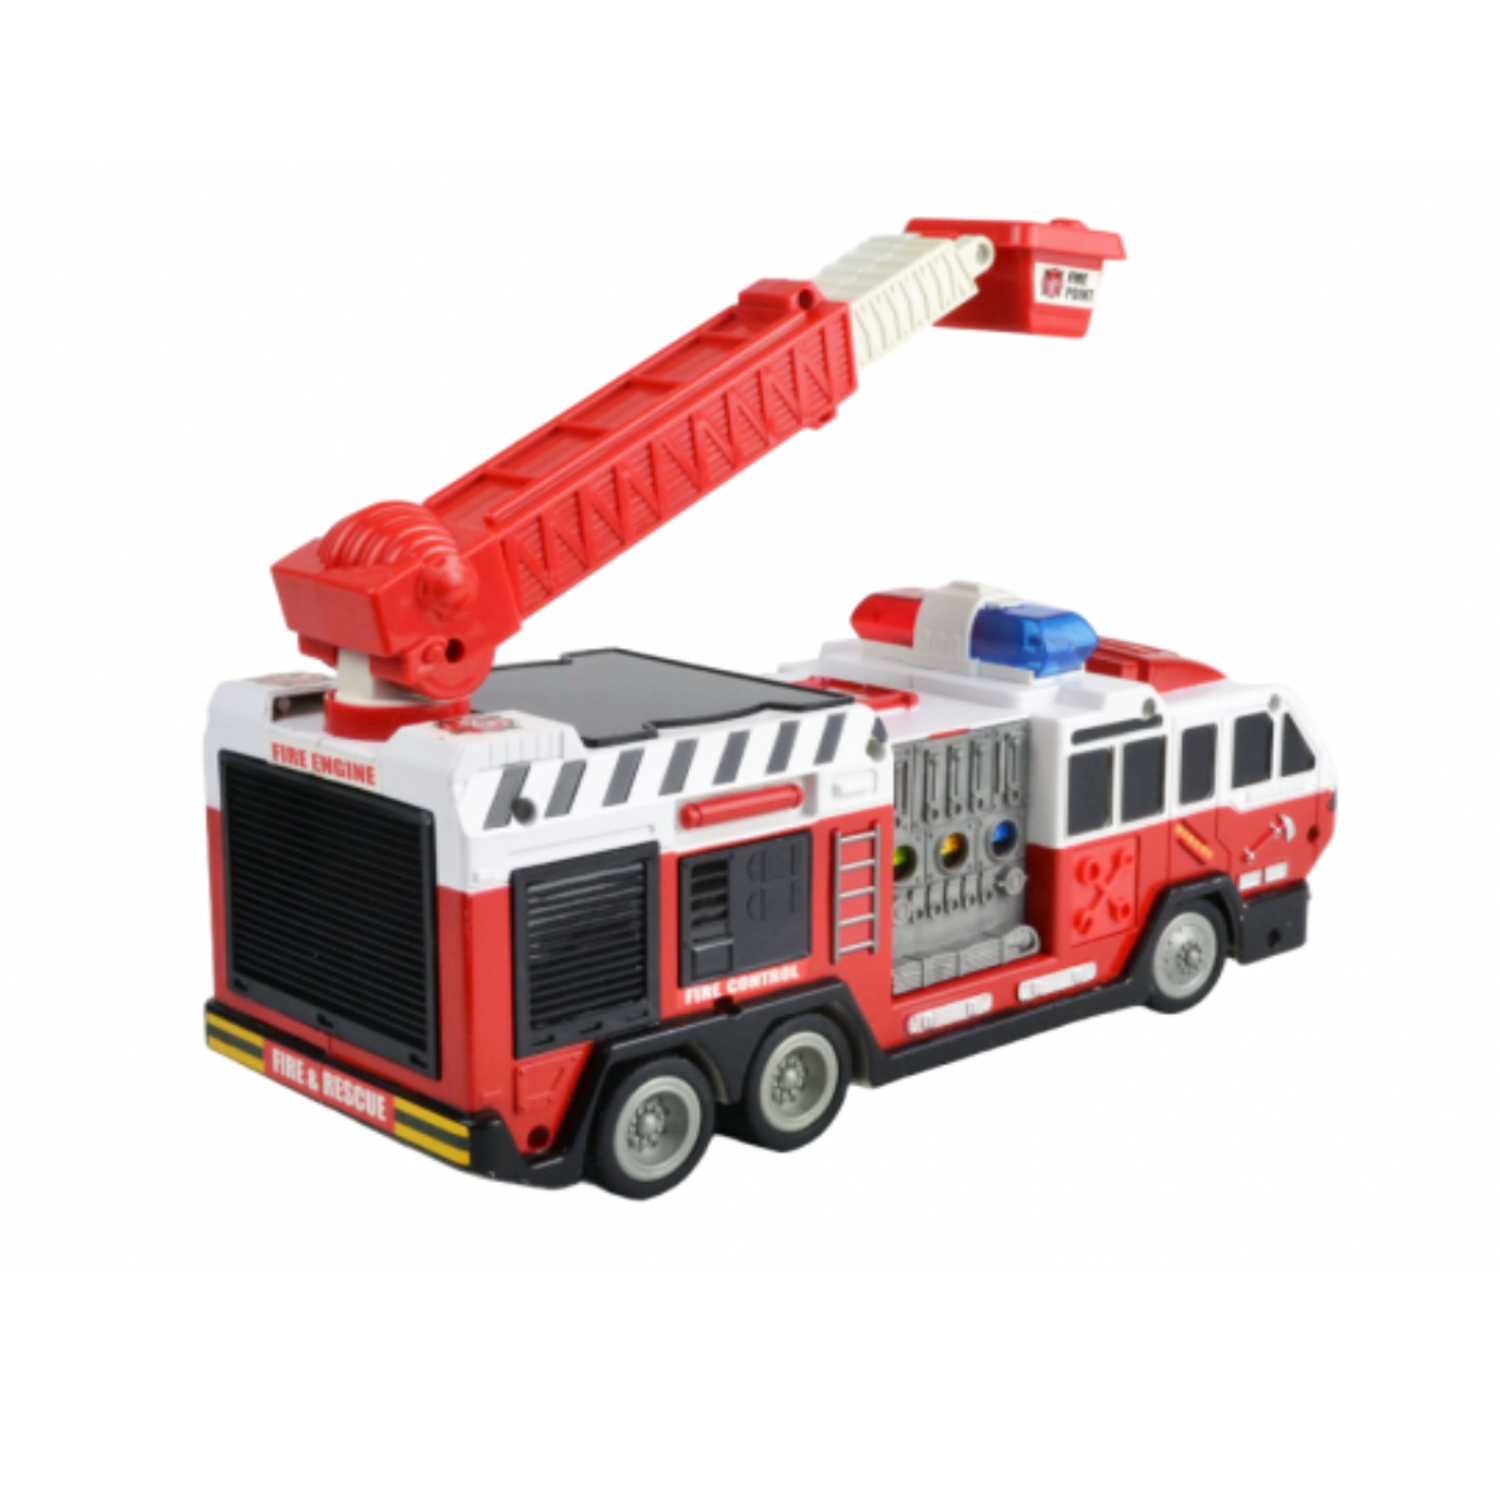 Пожарная машина DOUBLE EAGLE радиоуправляемая - фото 3